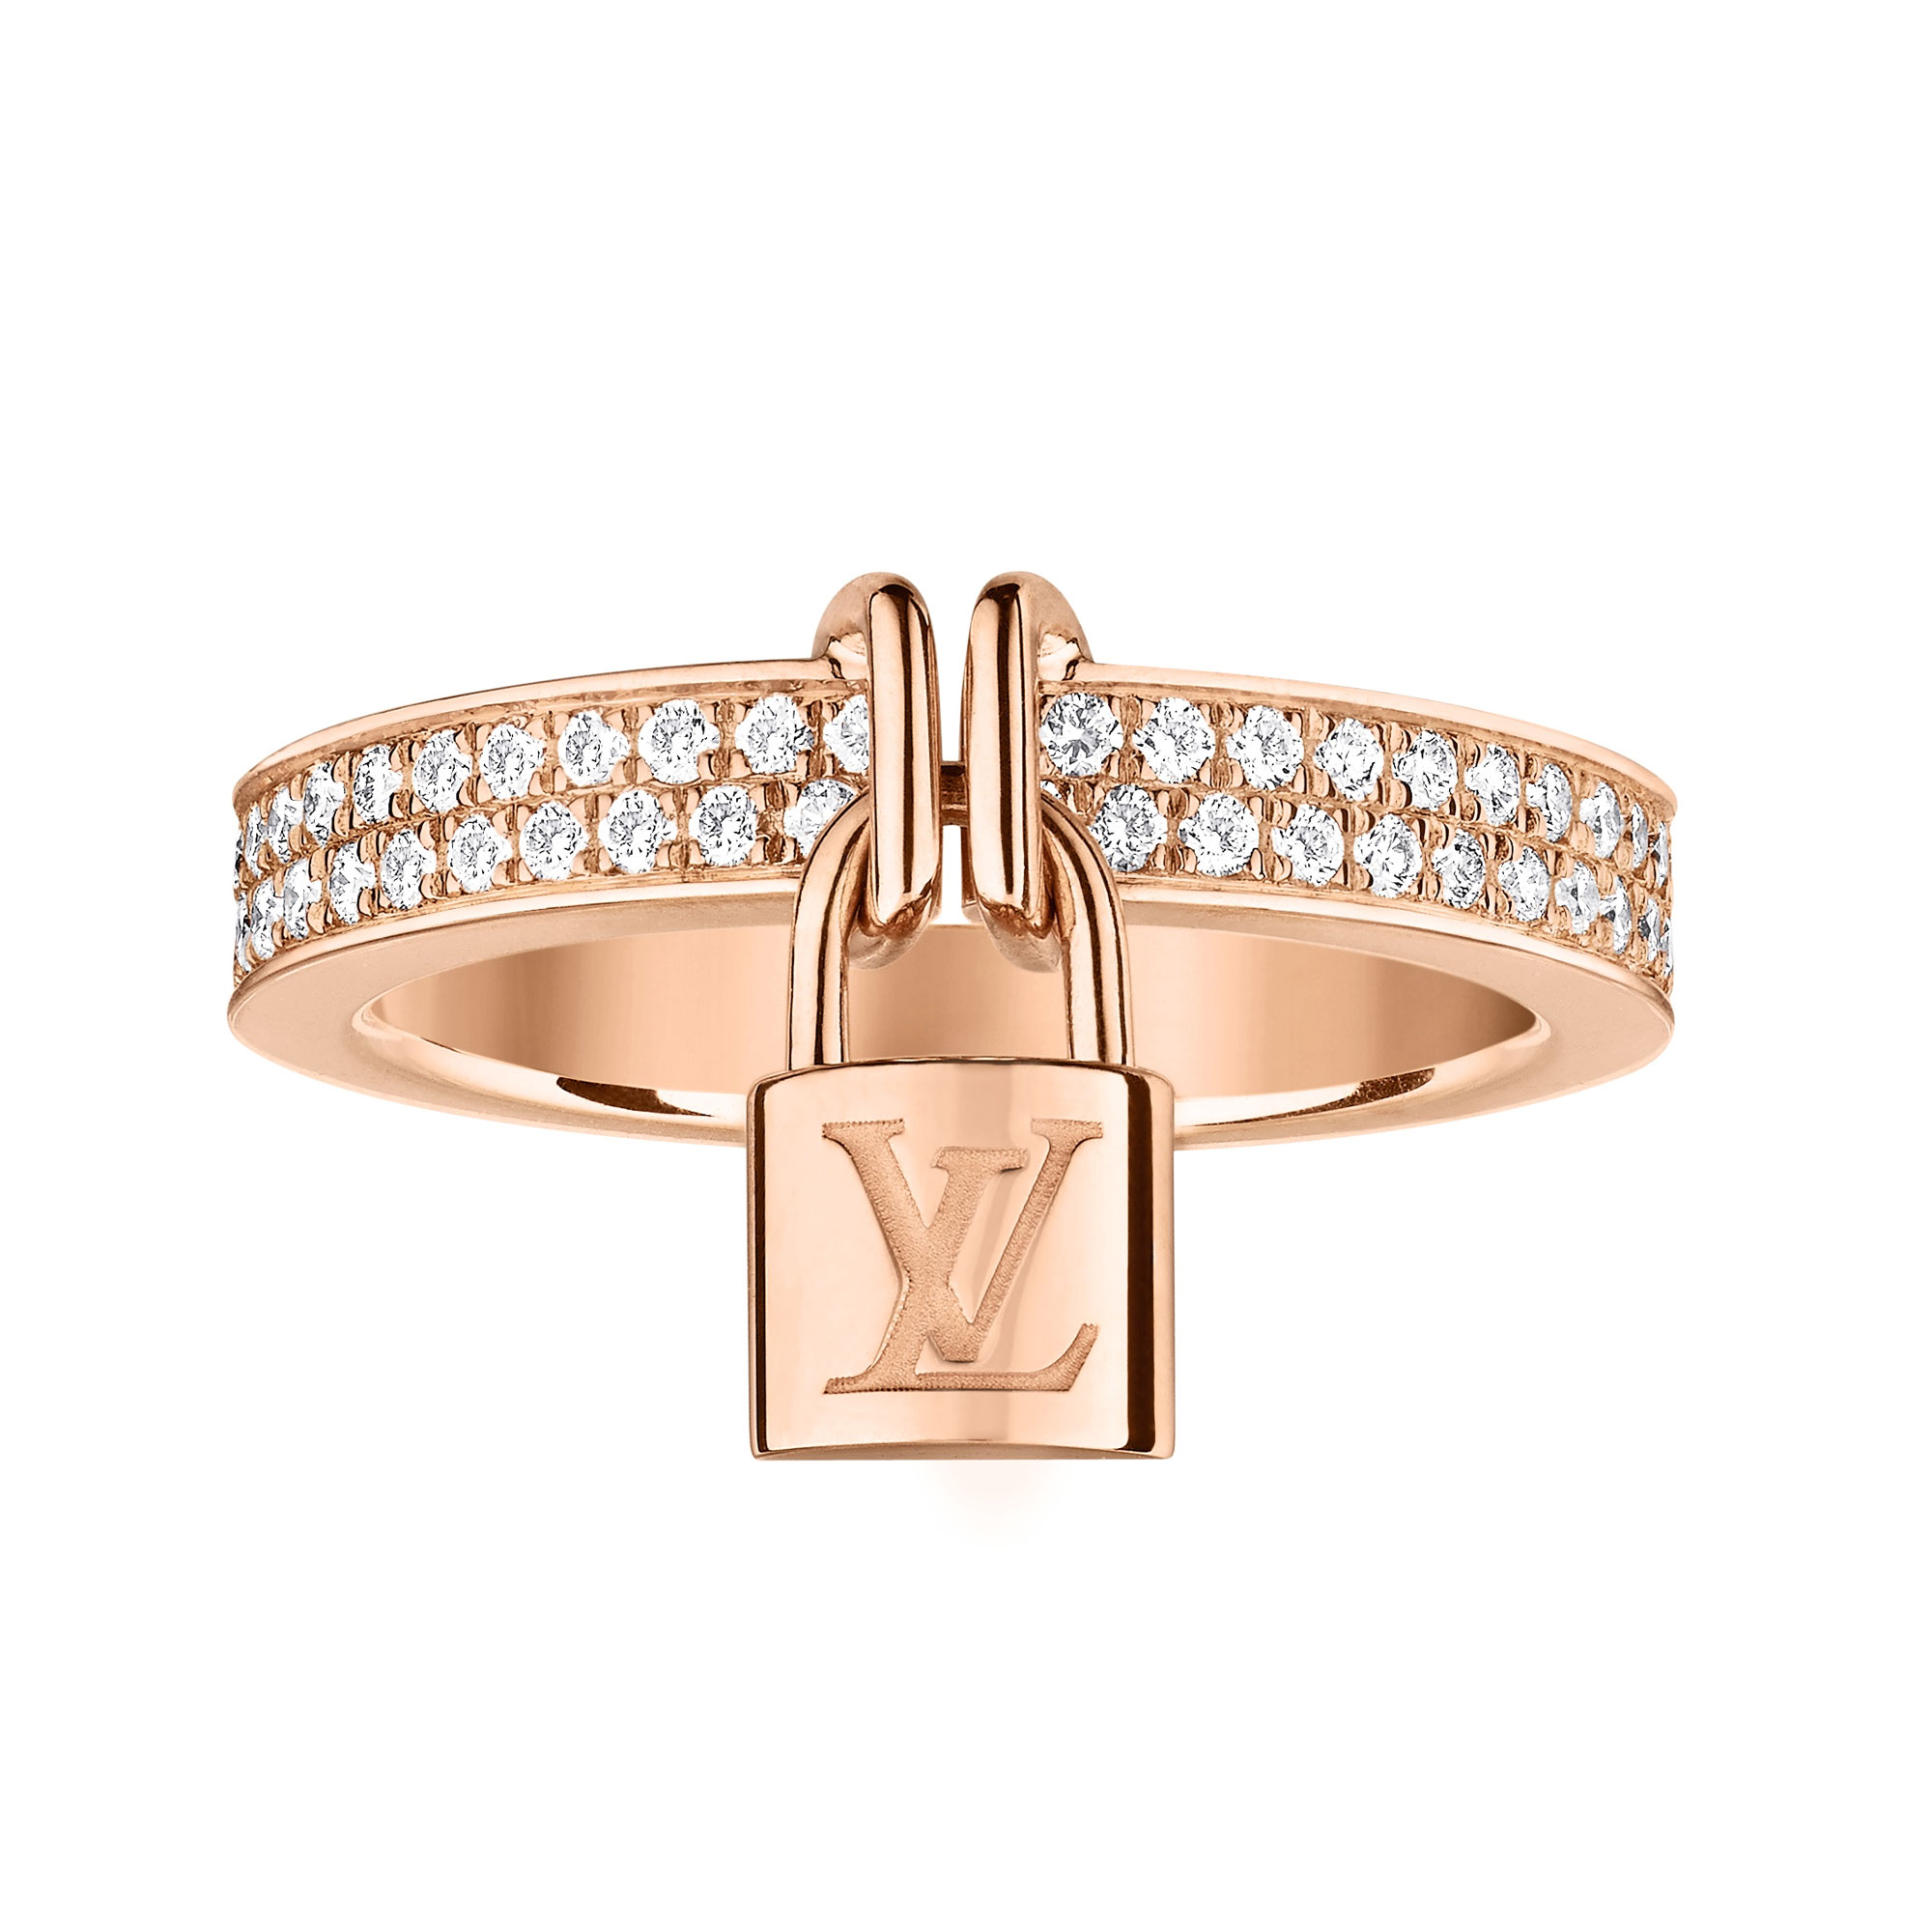 Louis Vuitton Lockit 18 Karat Gold 0.40 Carat Diamond Pave